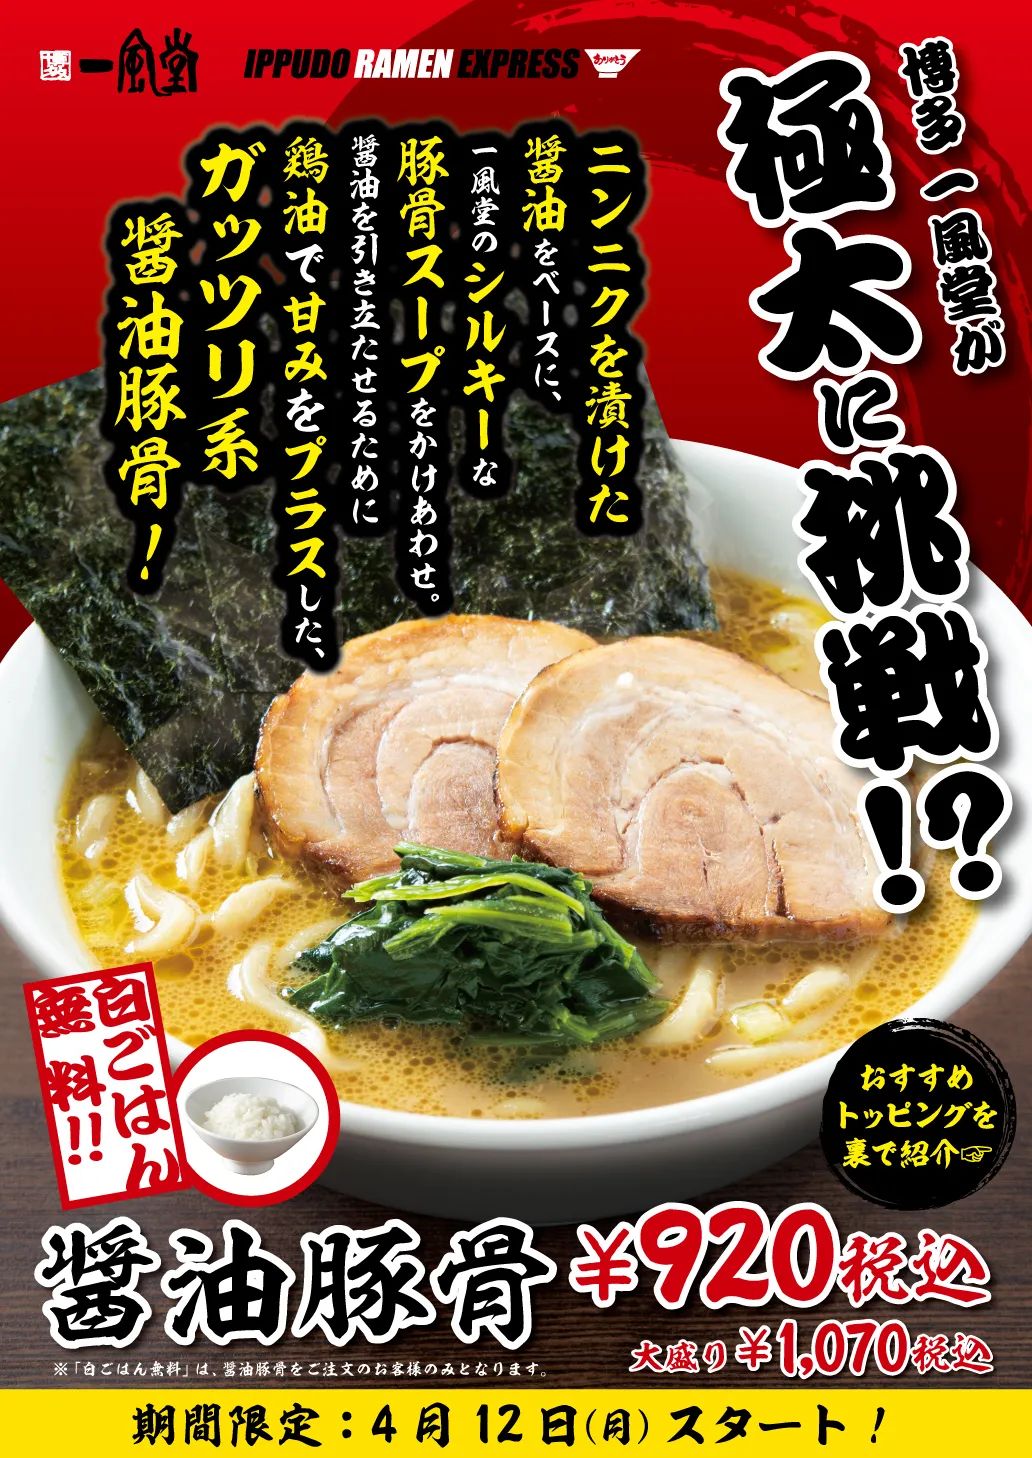 30款日本餐饮拉面海报设计